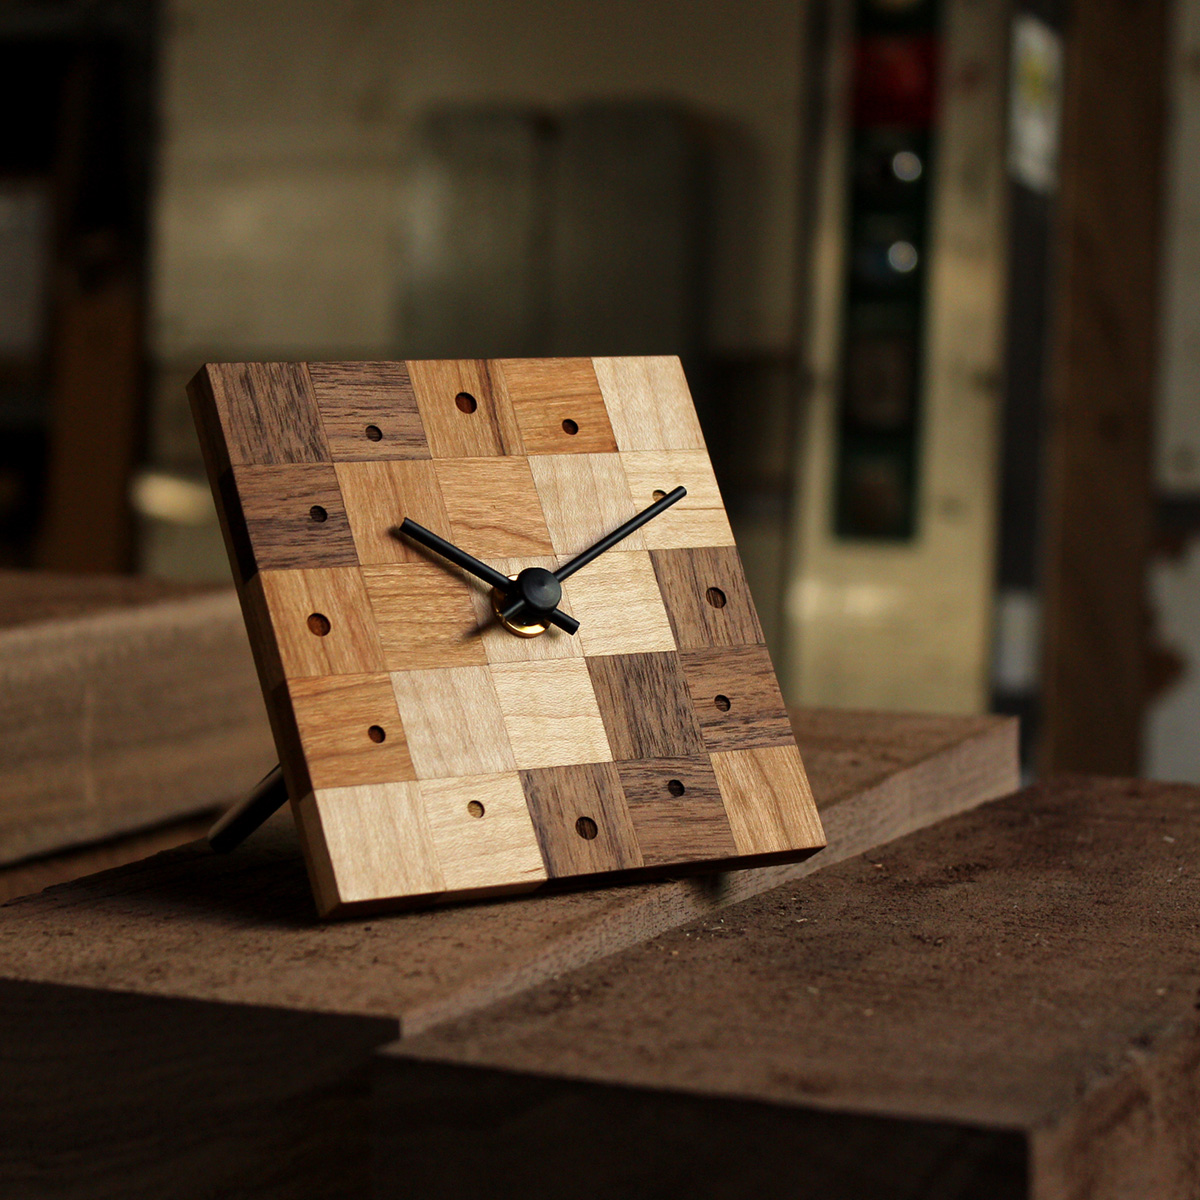 銘木の端材を活用したモザイクタイル風のミニ時計づくりワークショップ